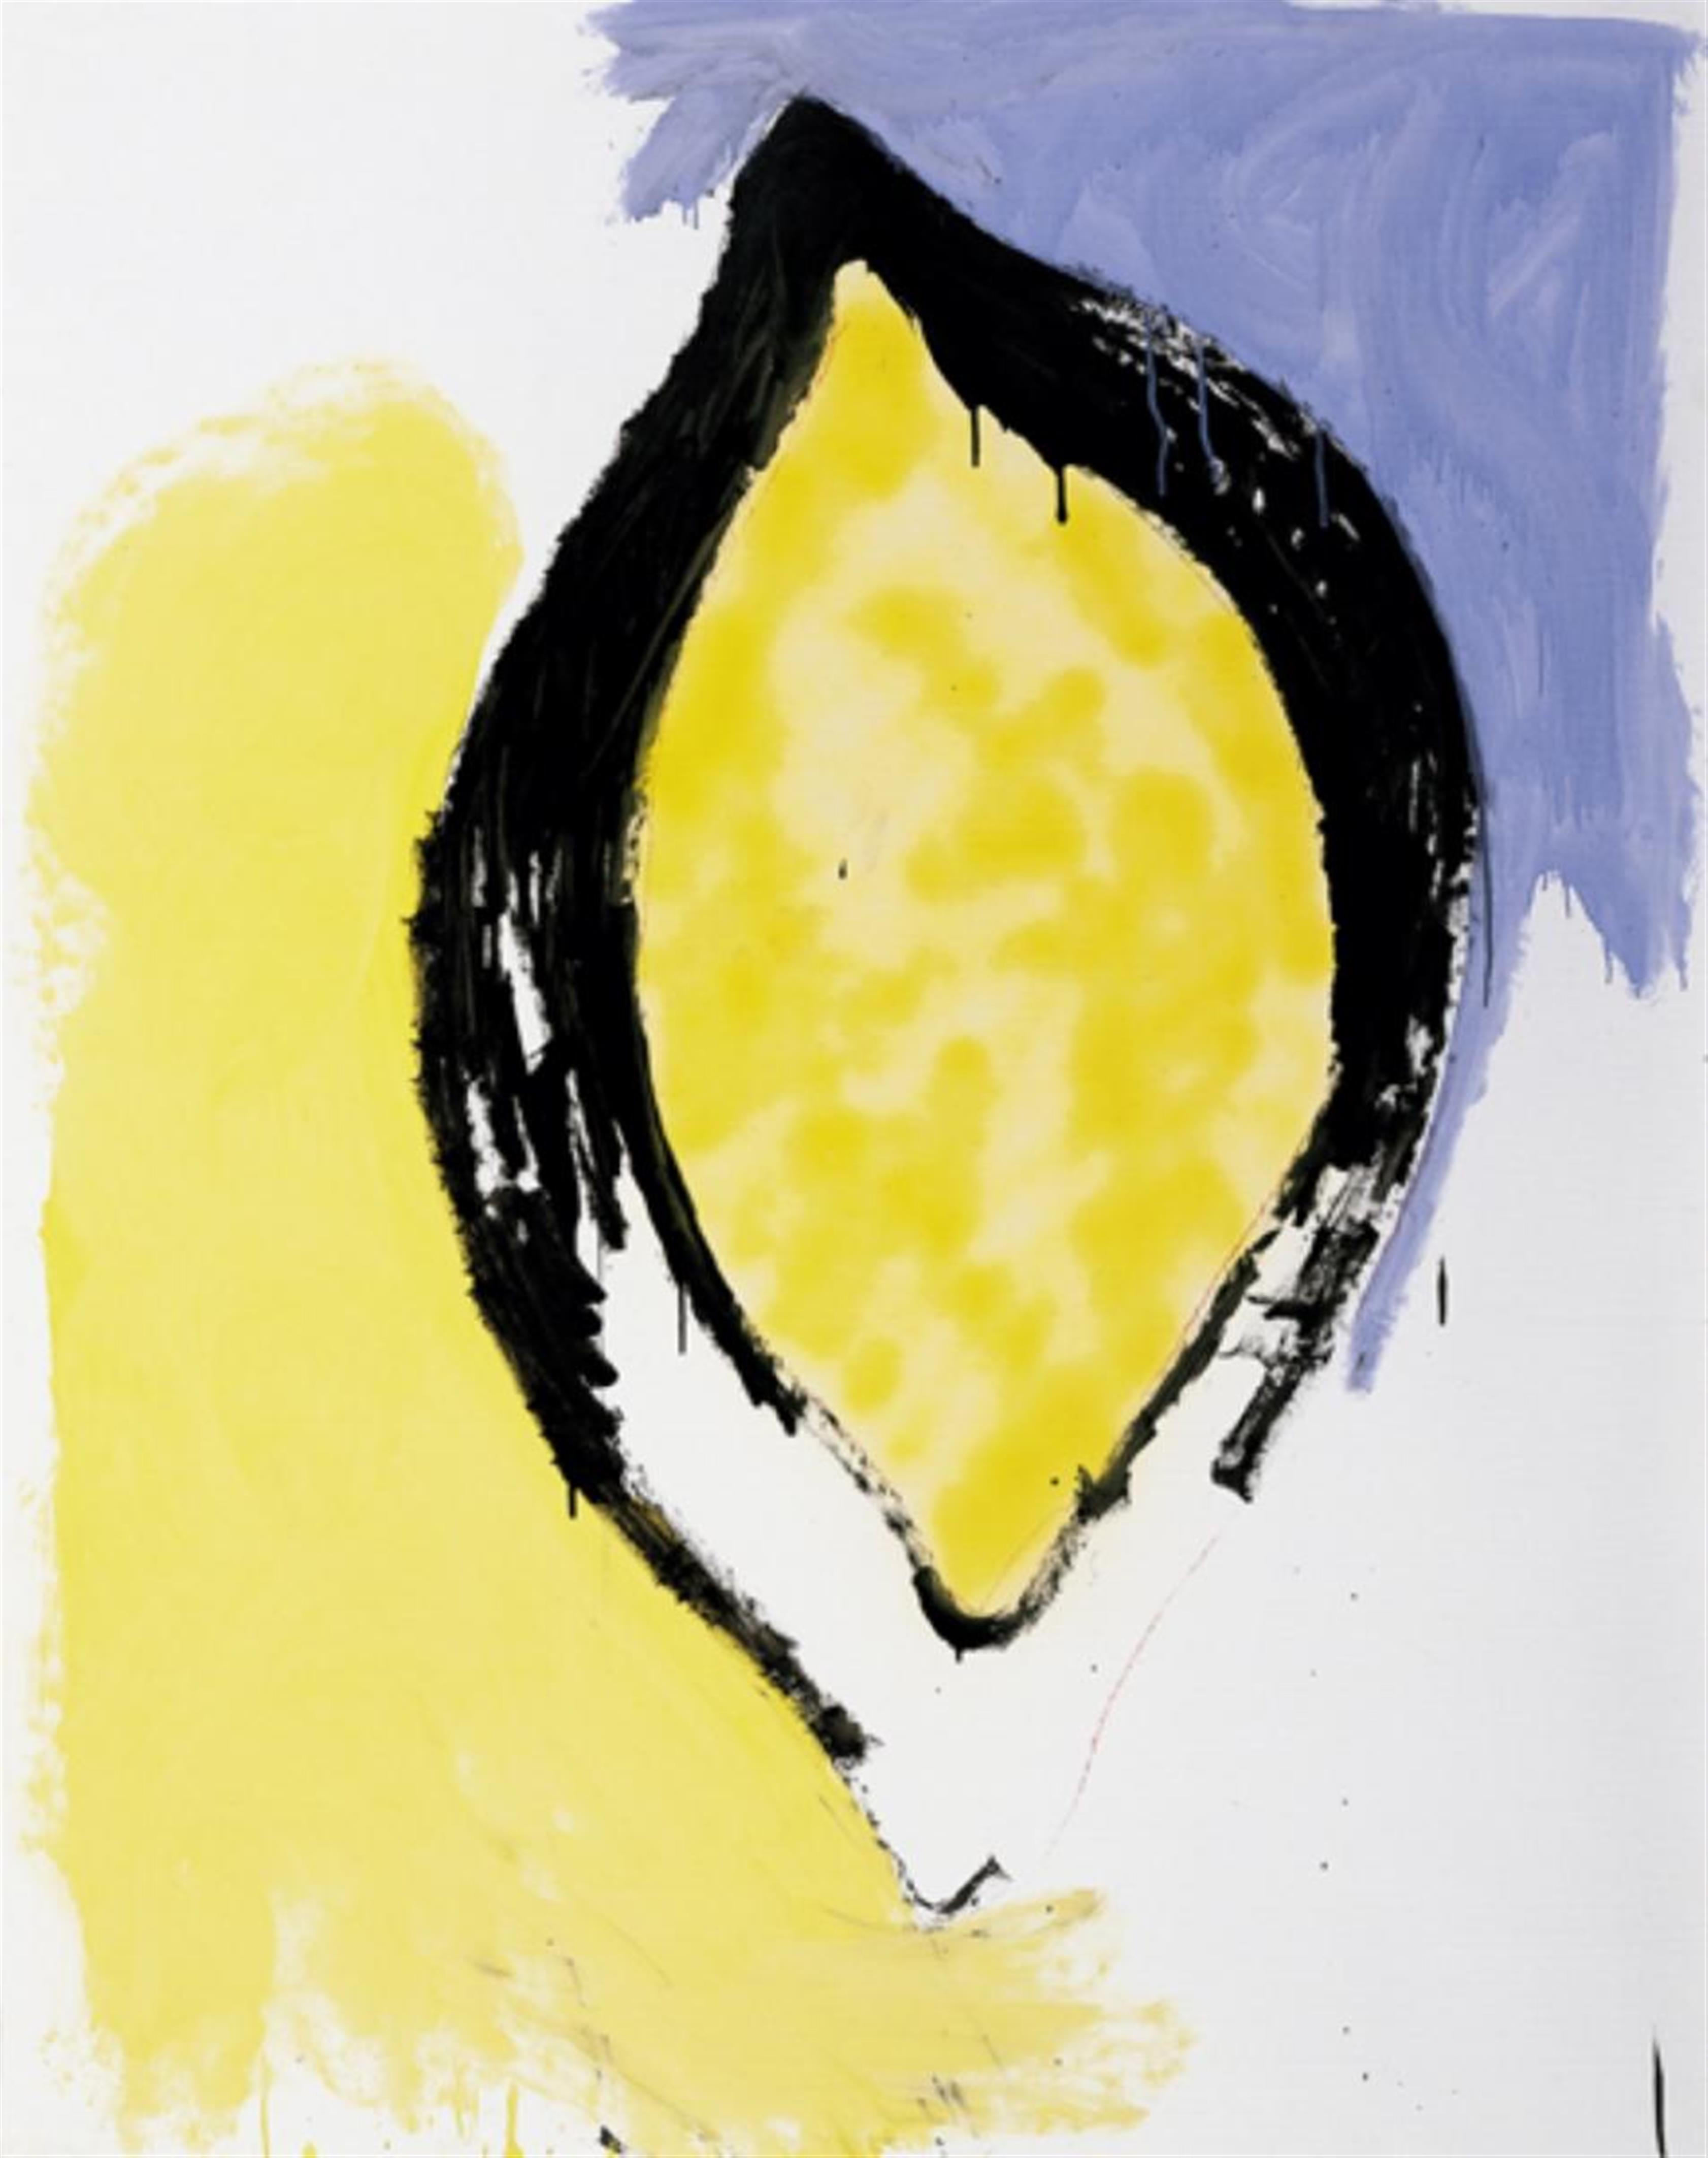 Thomas Schütte - Zitrone mit Blau, Gelb und Schwarz - image-1